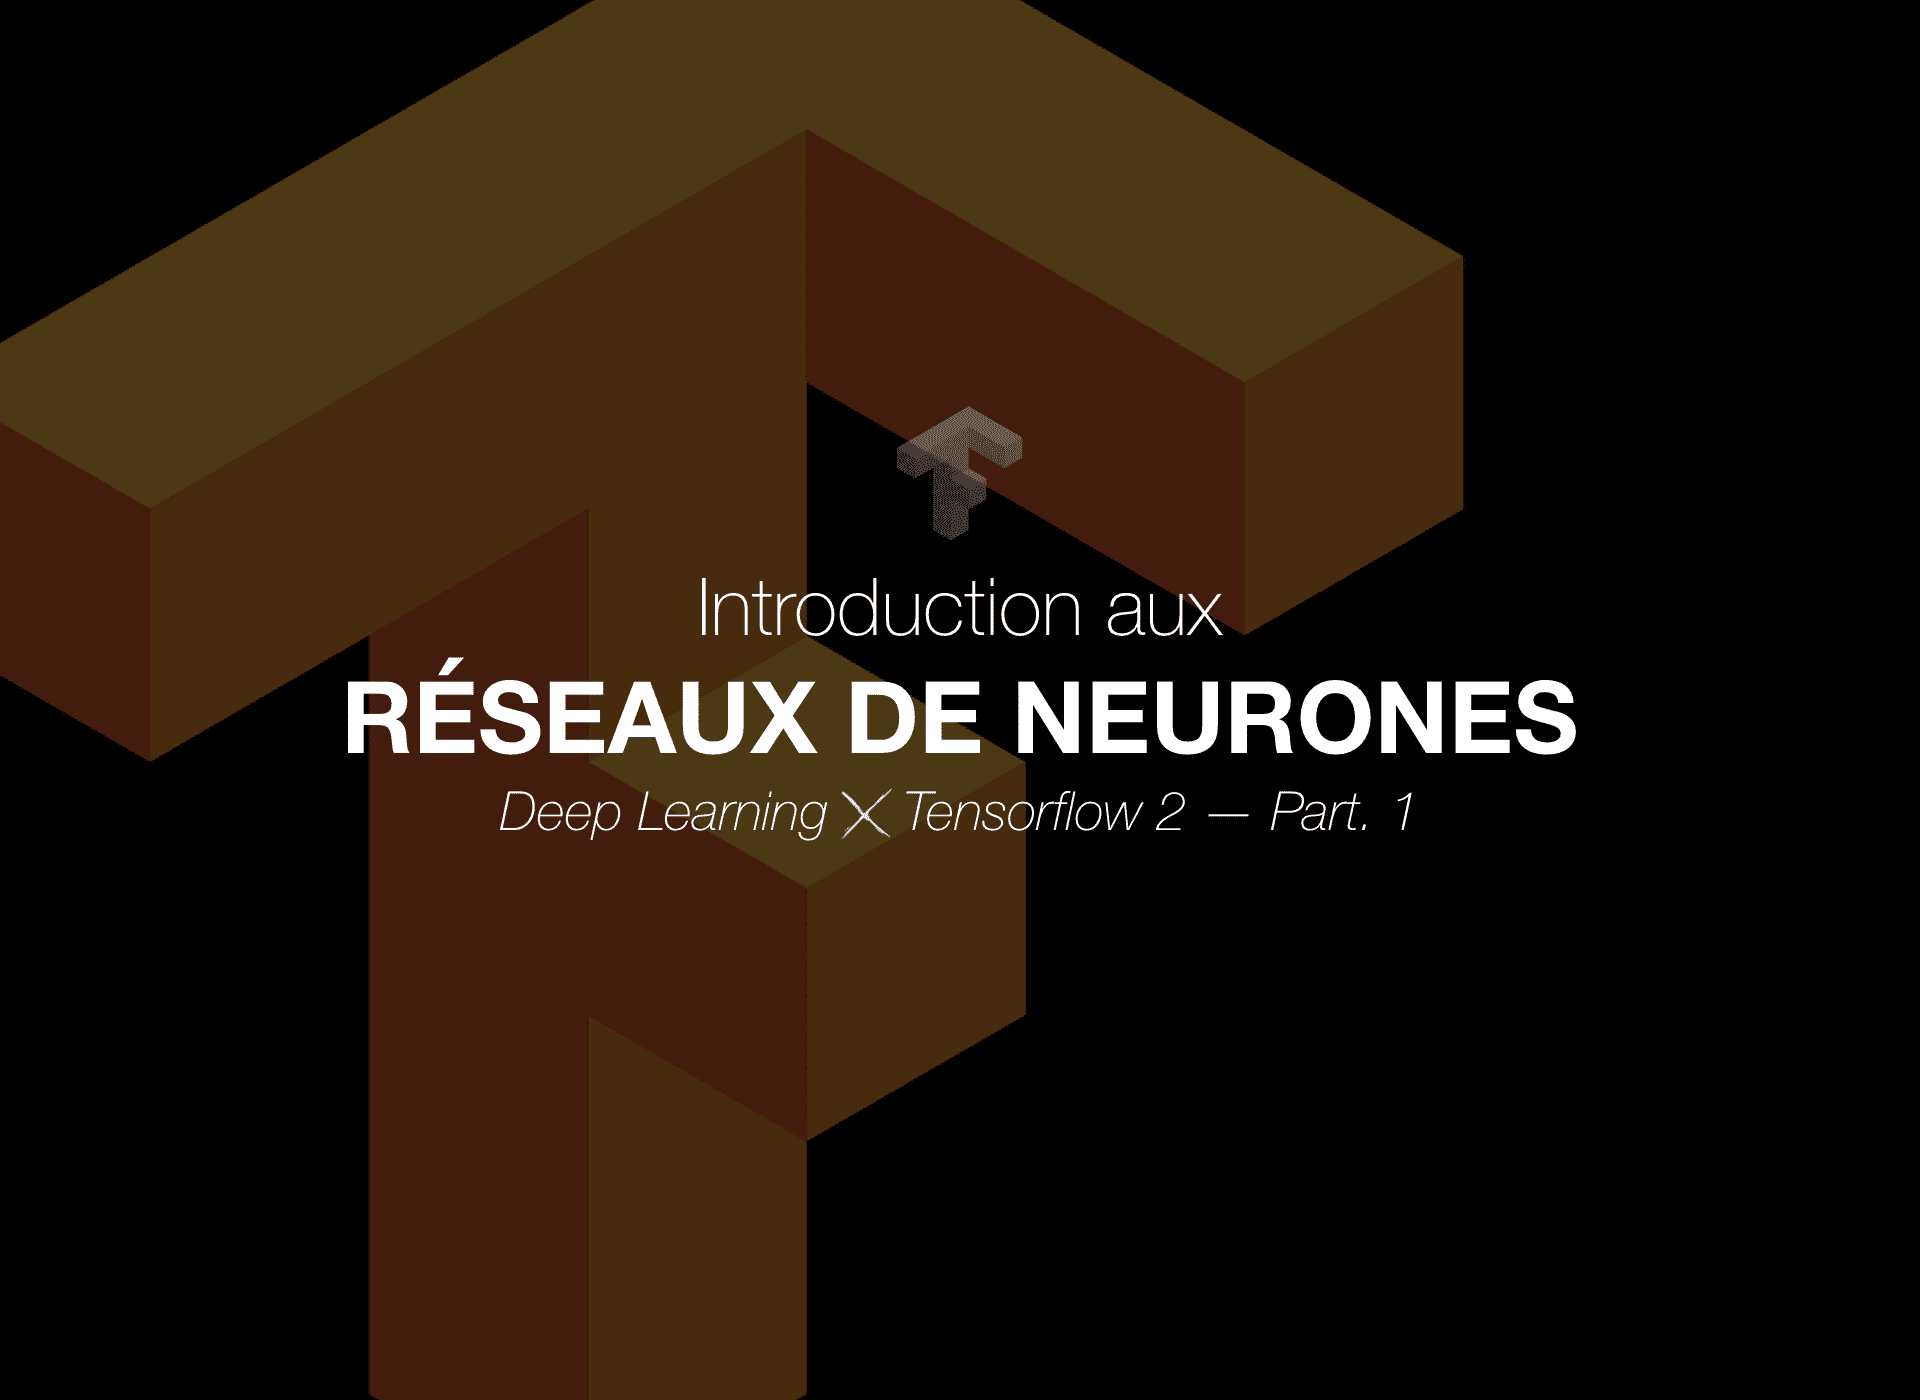 🇫🇷 Introduction aux Réseaux de Neurones – DLXT2 (Part. 1) cover image